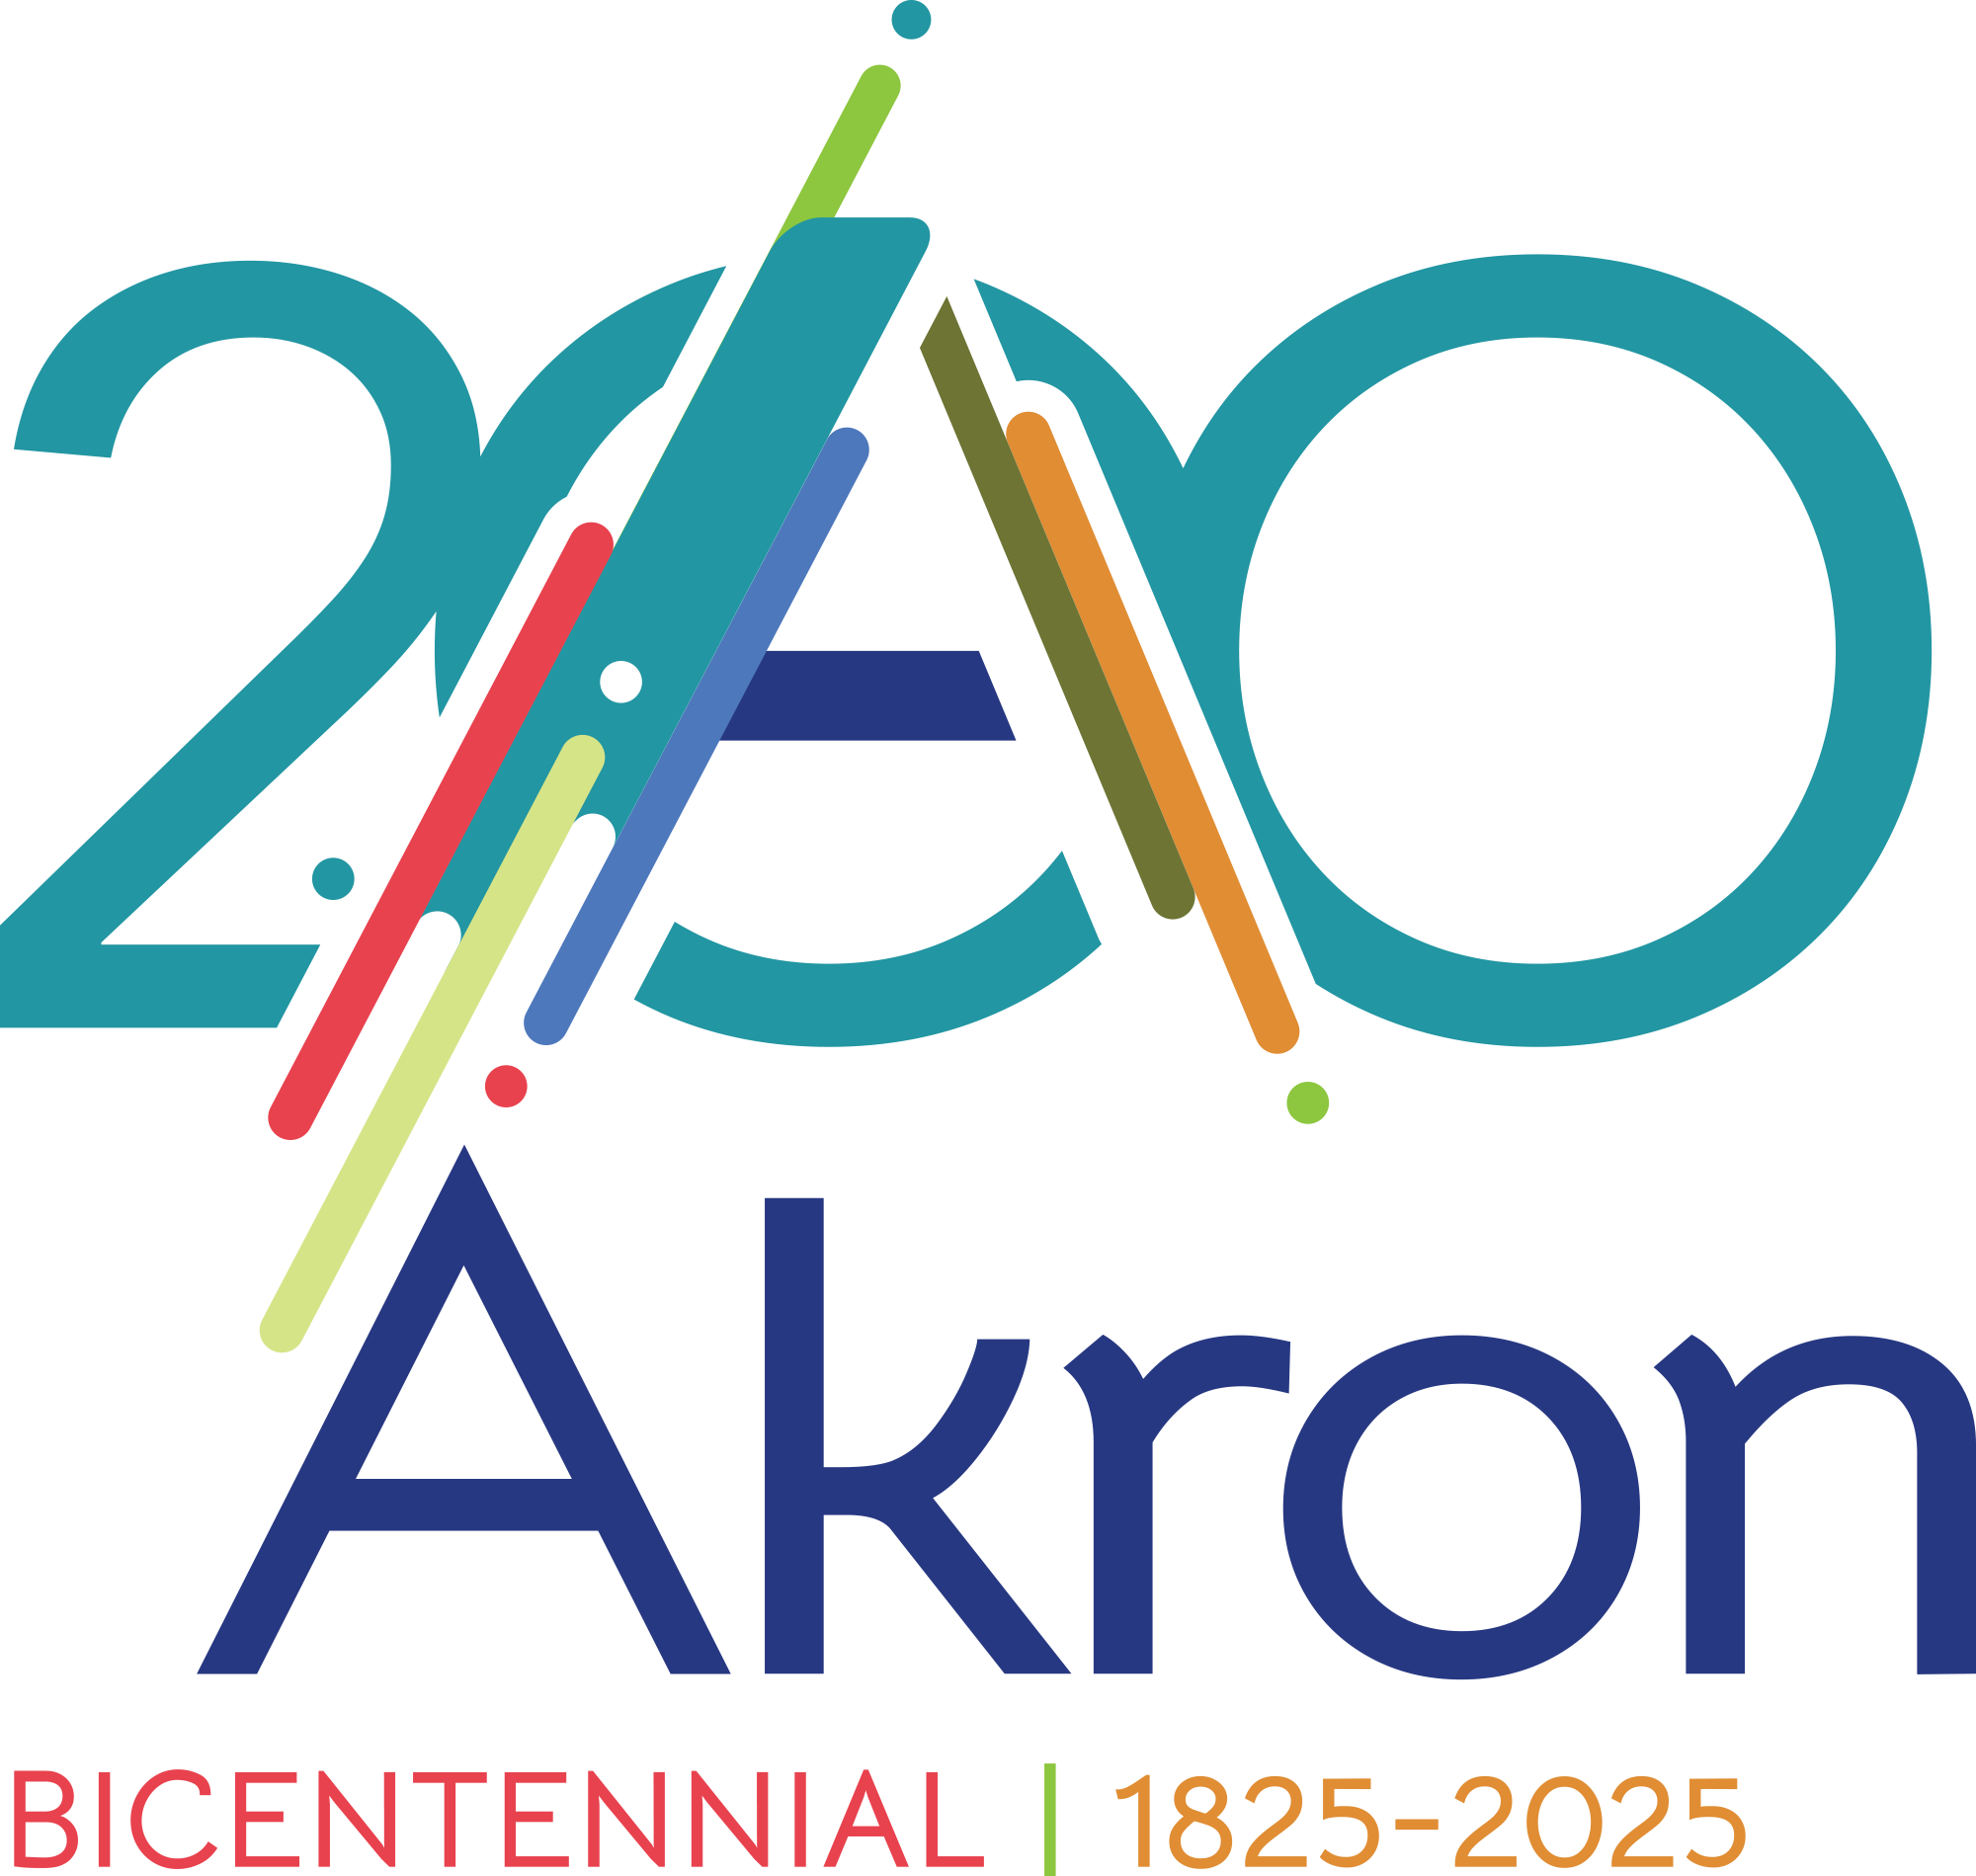 Akron Bicentennial logo